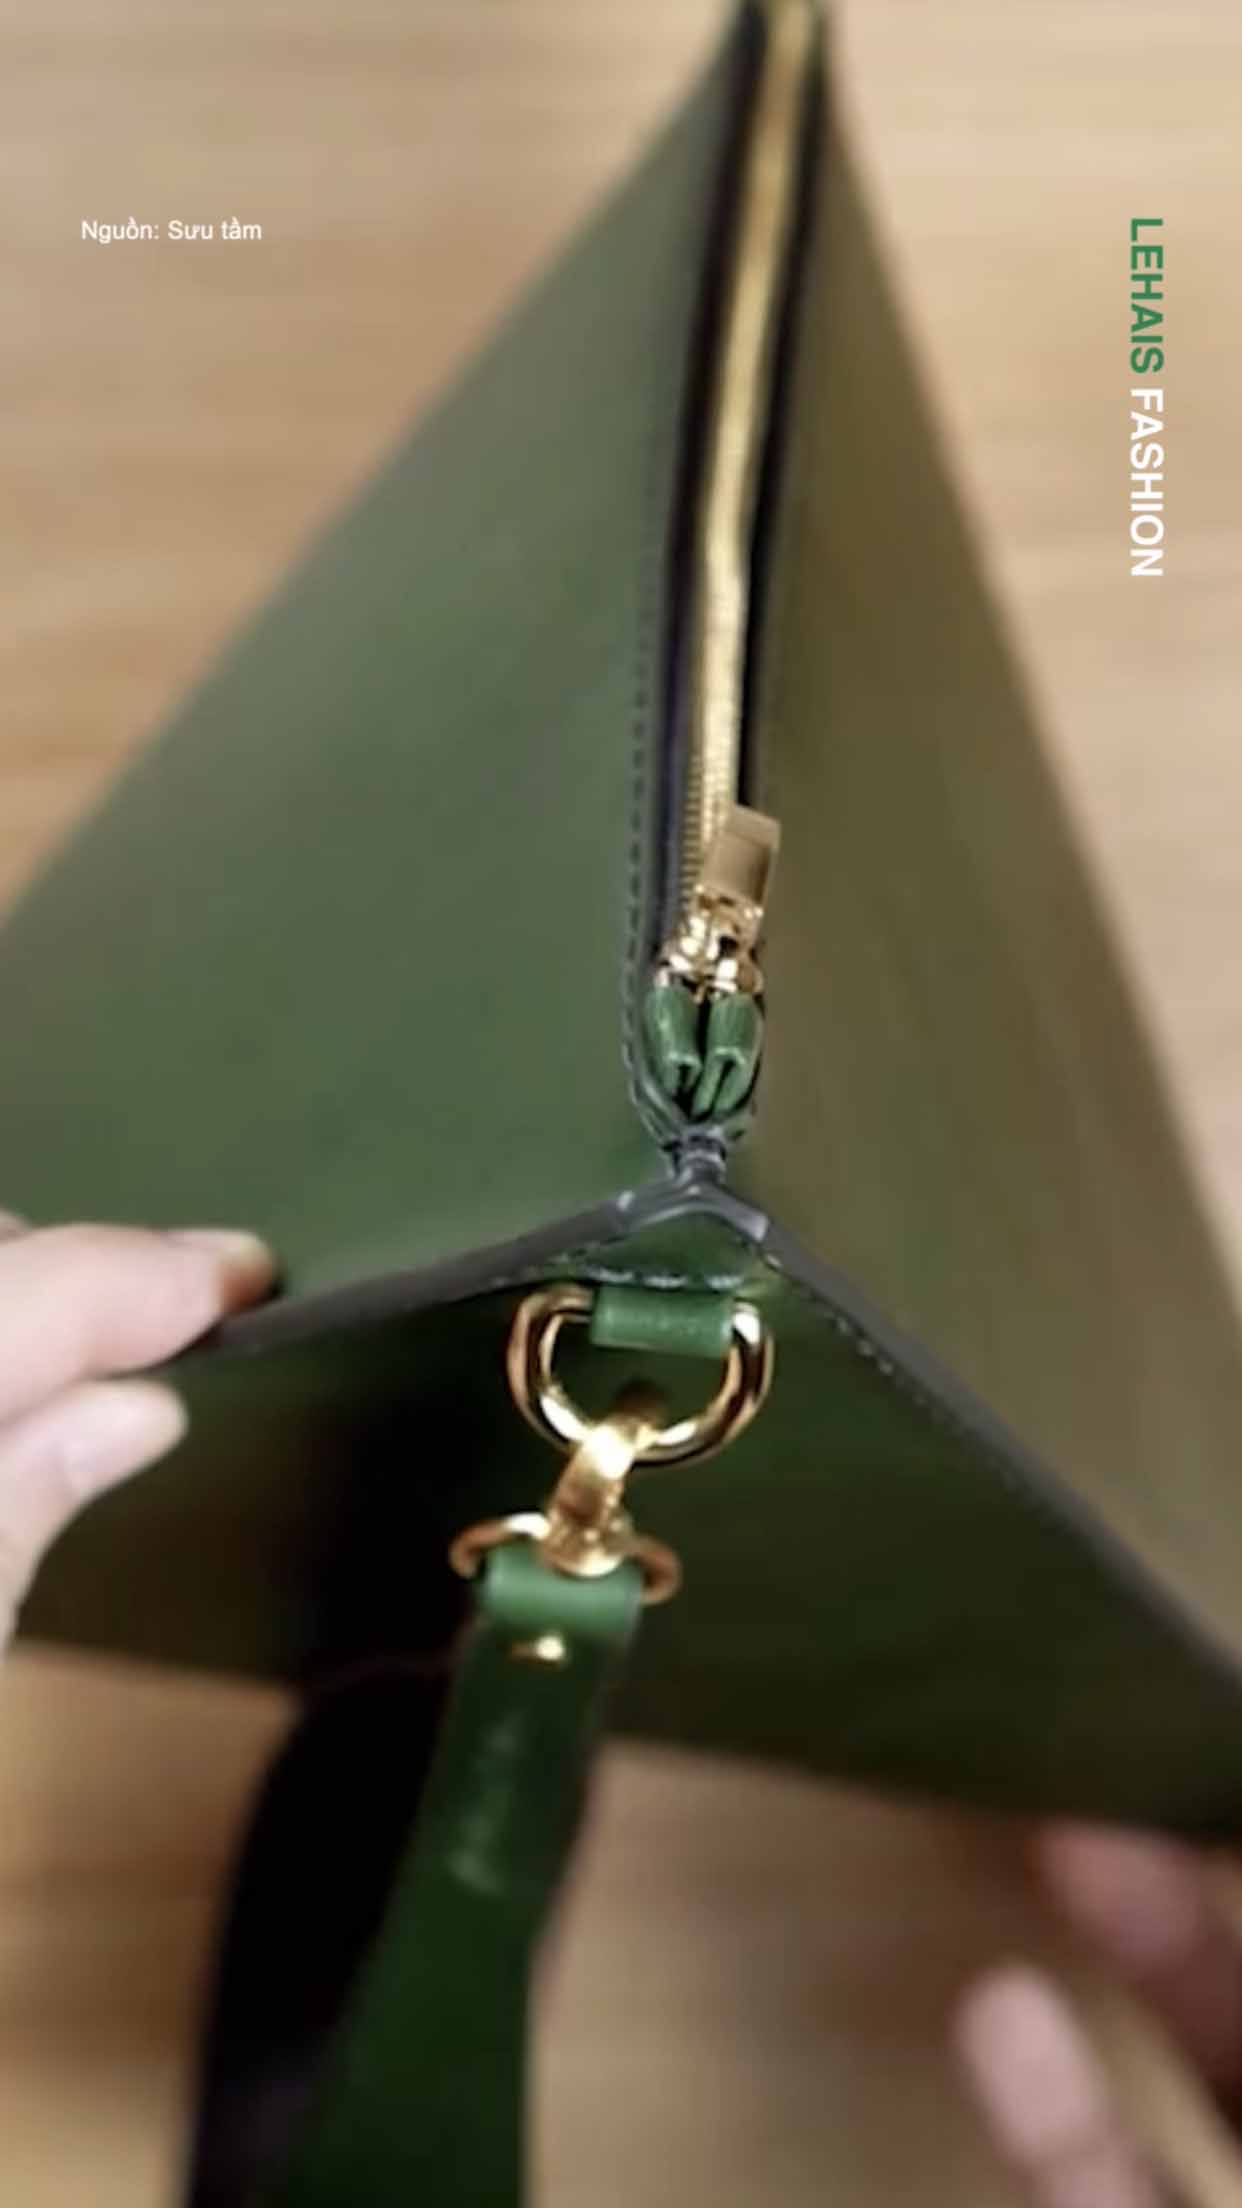 Chiếc túi hình tam giác cục xinh xắn